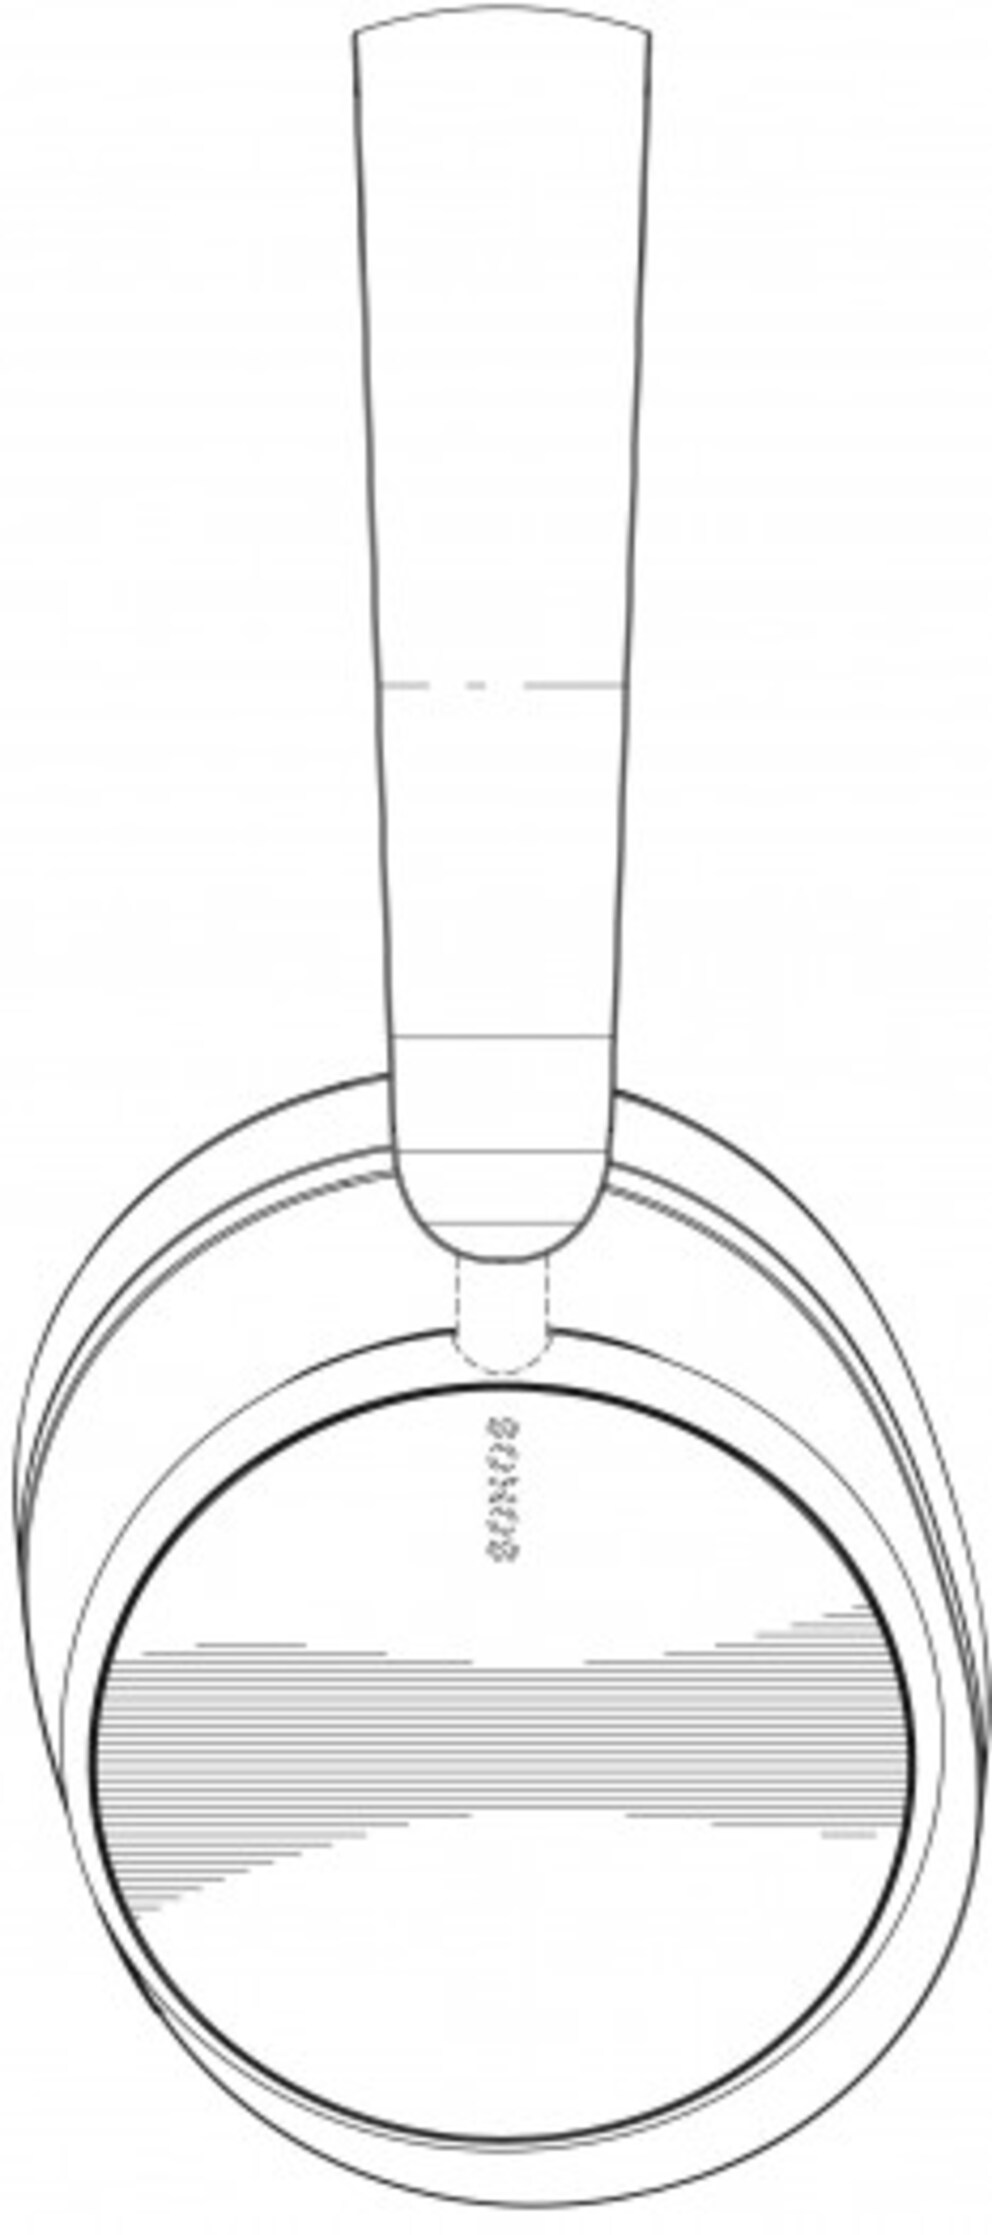 De nouveaux dessins du premier casque Sonos ont été publiés - digitec